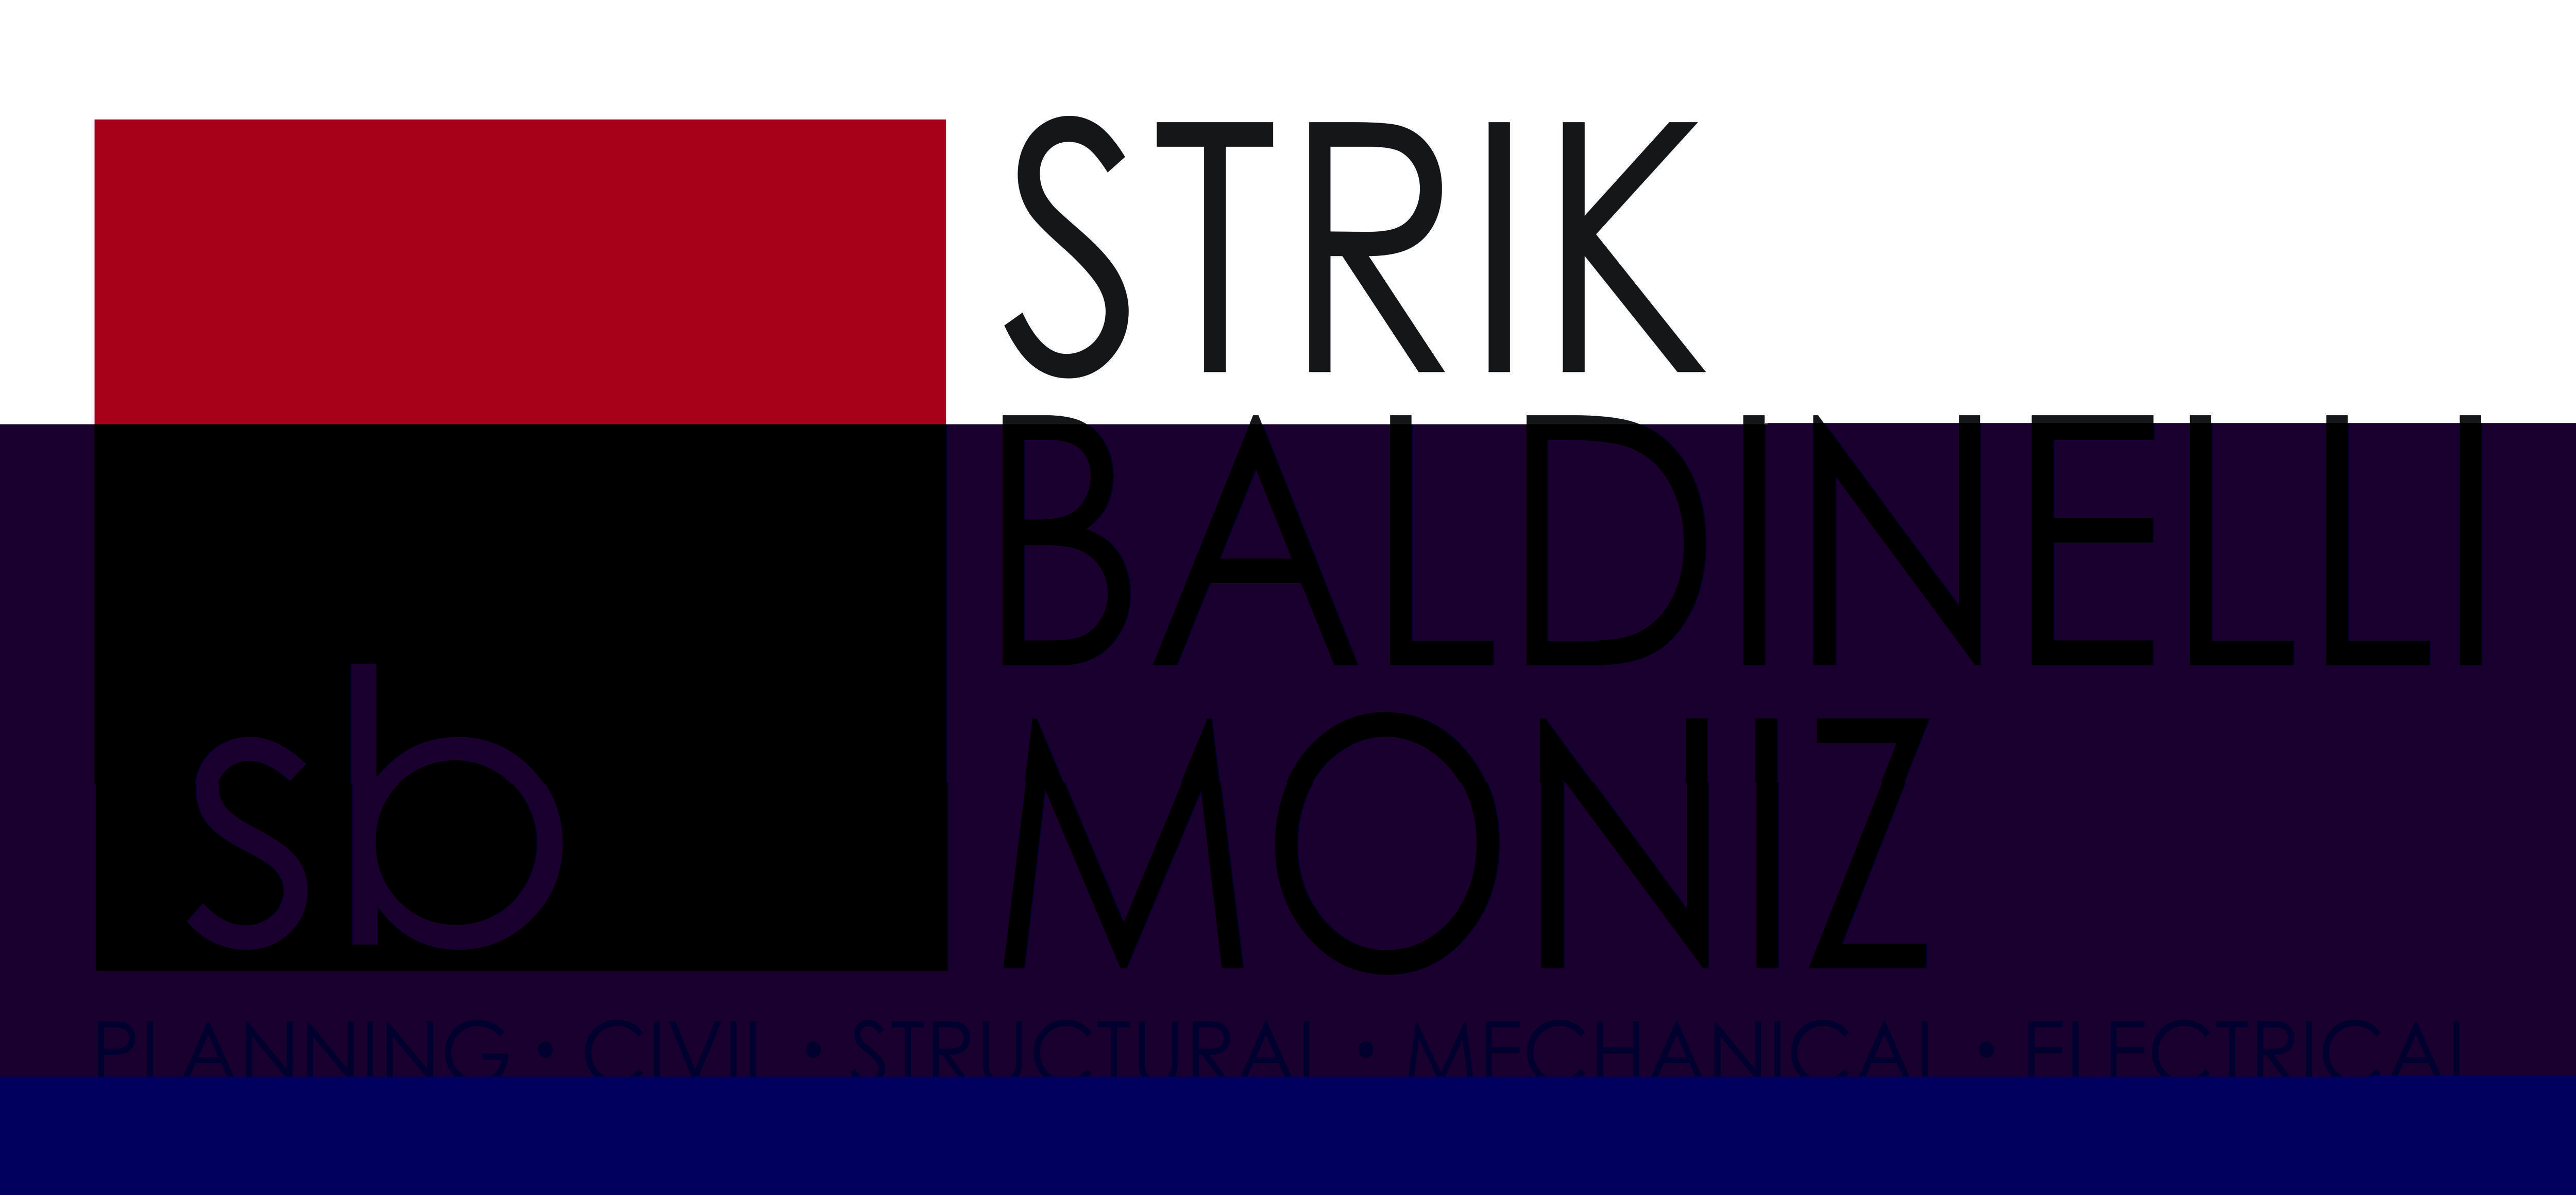 Strik Baldinelli Moniz